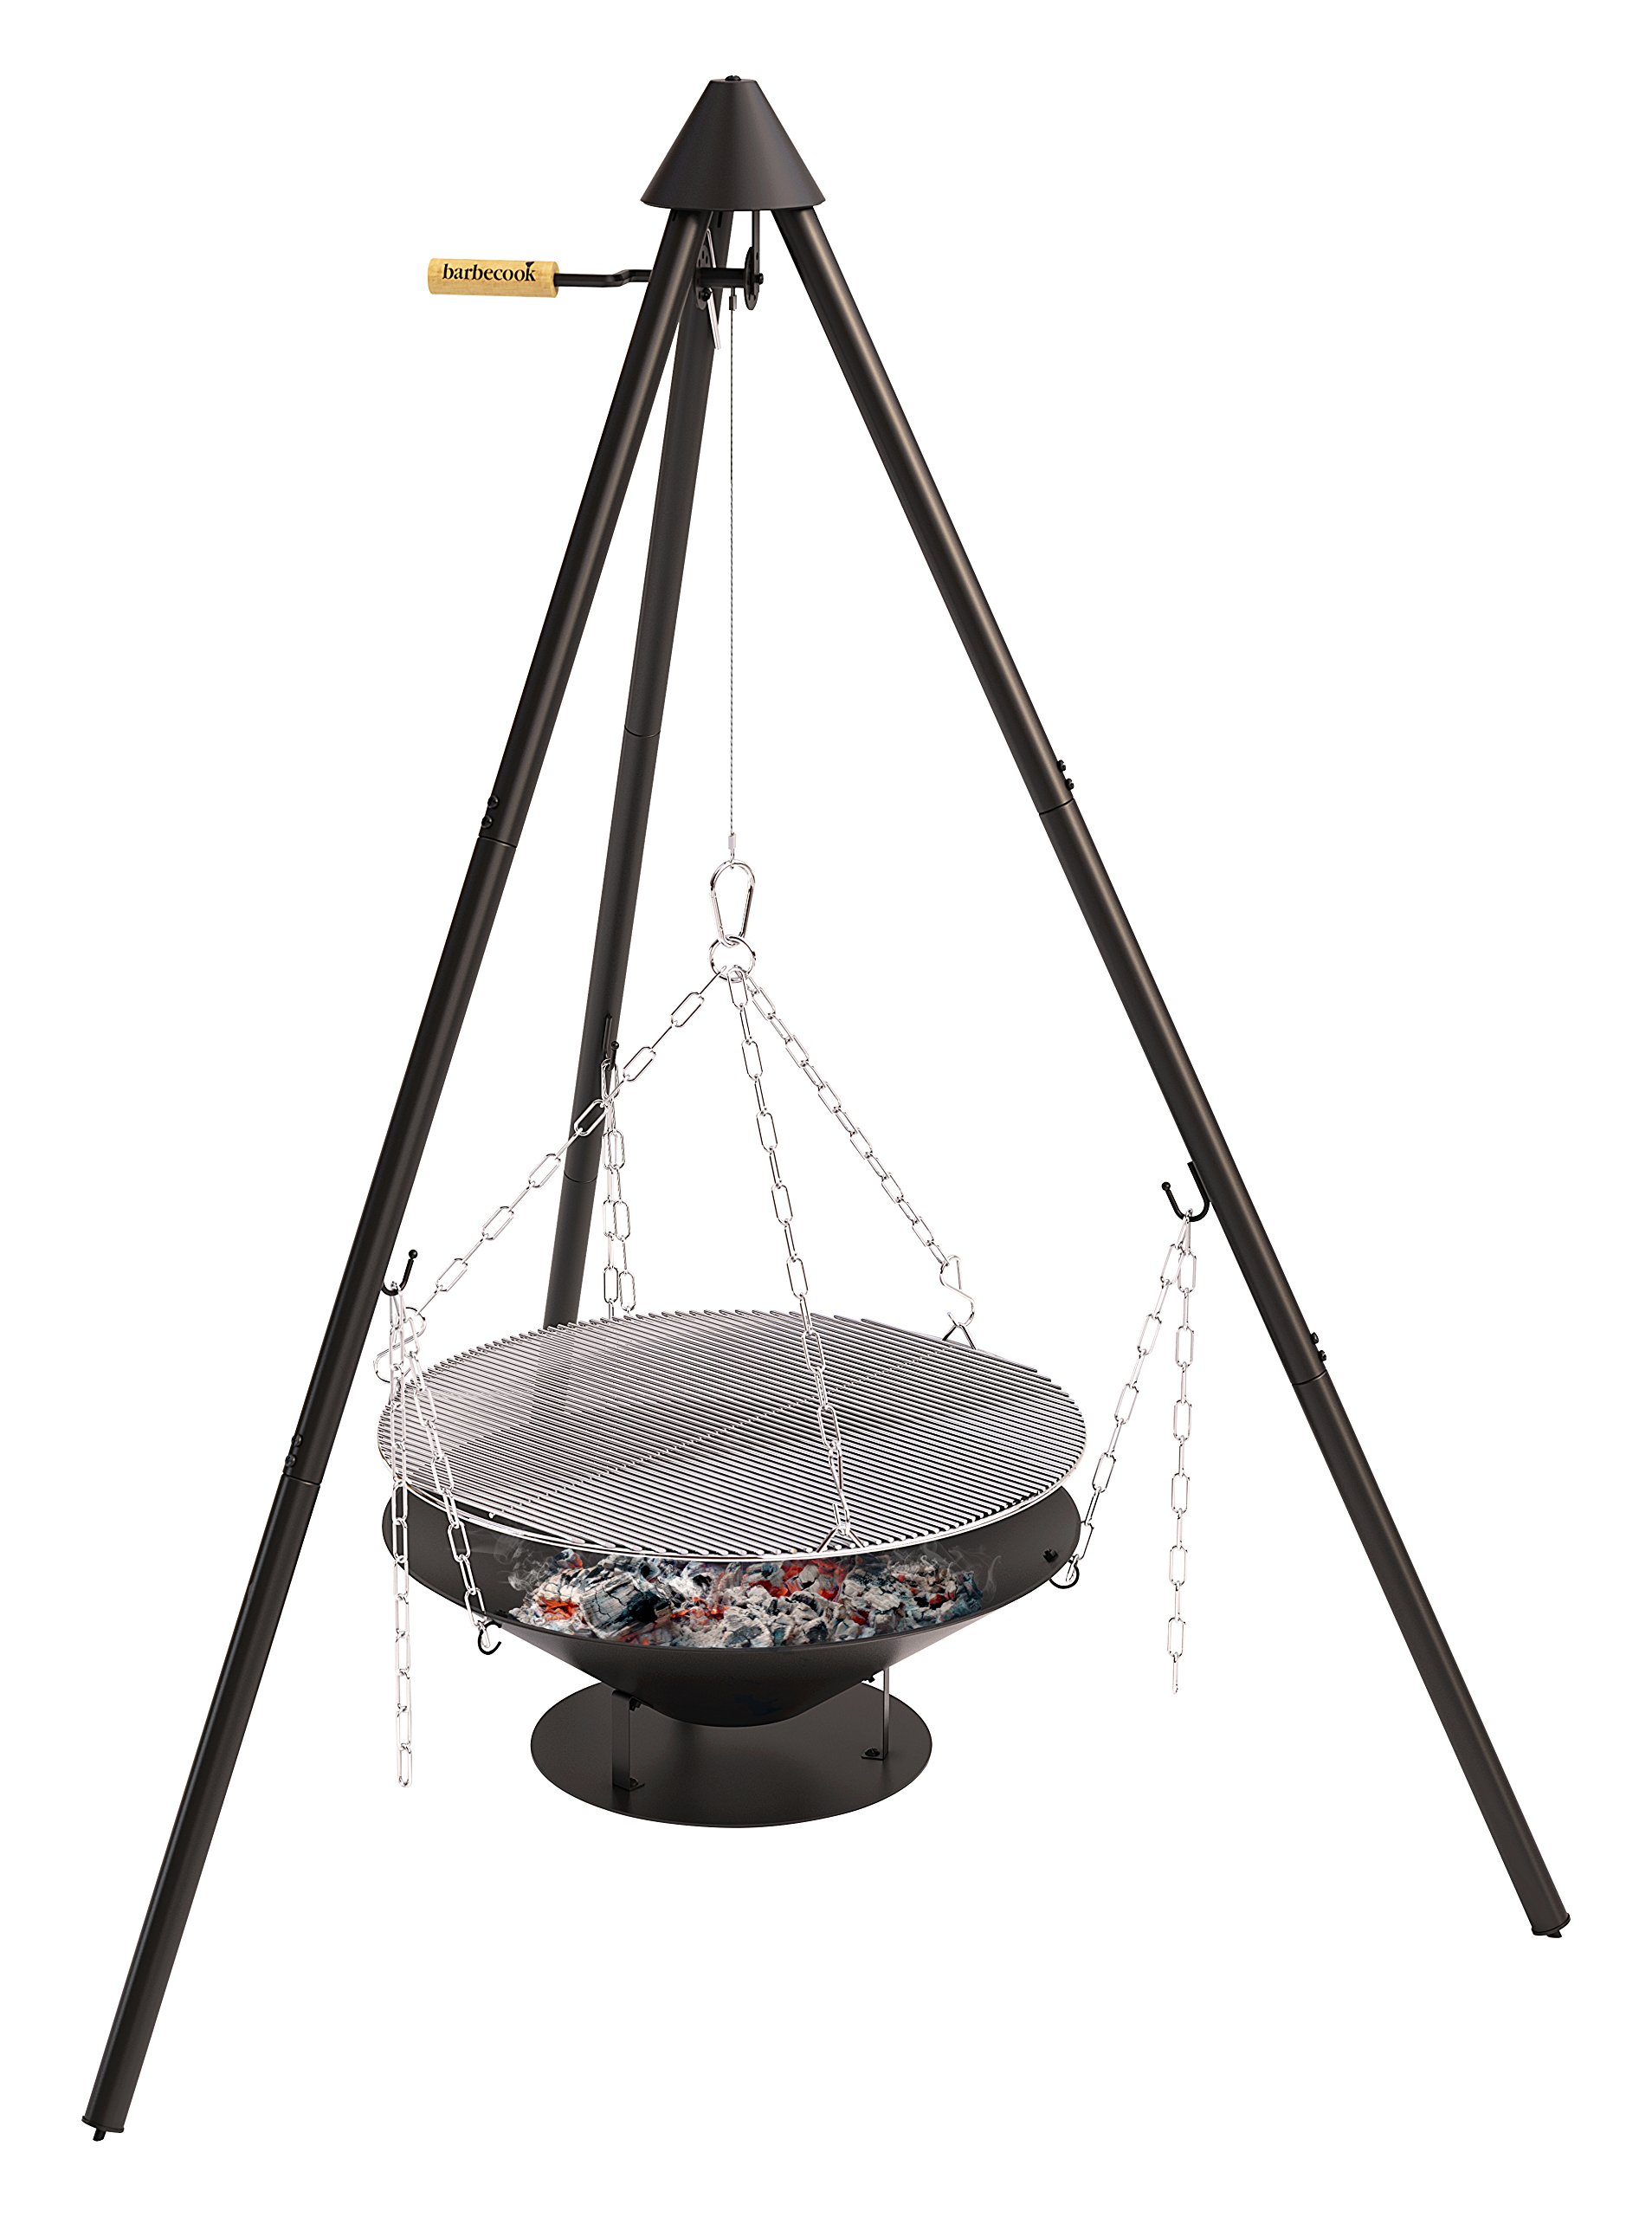 Barbecook Holzkohle Schwenkgrill mit Dreibein-Gestell höhen-verstellbar inklusive Feuerschale und Tragetasche, schwarz, 61x61x22,5 cm, 61.0x61.0x22.5 cm